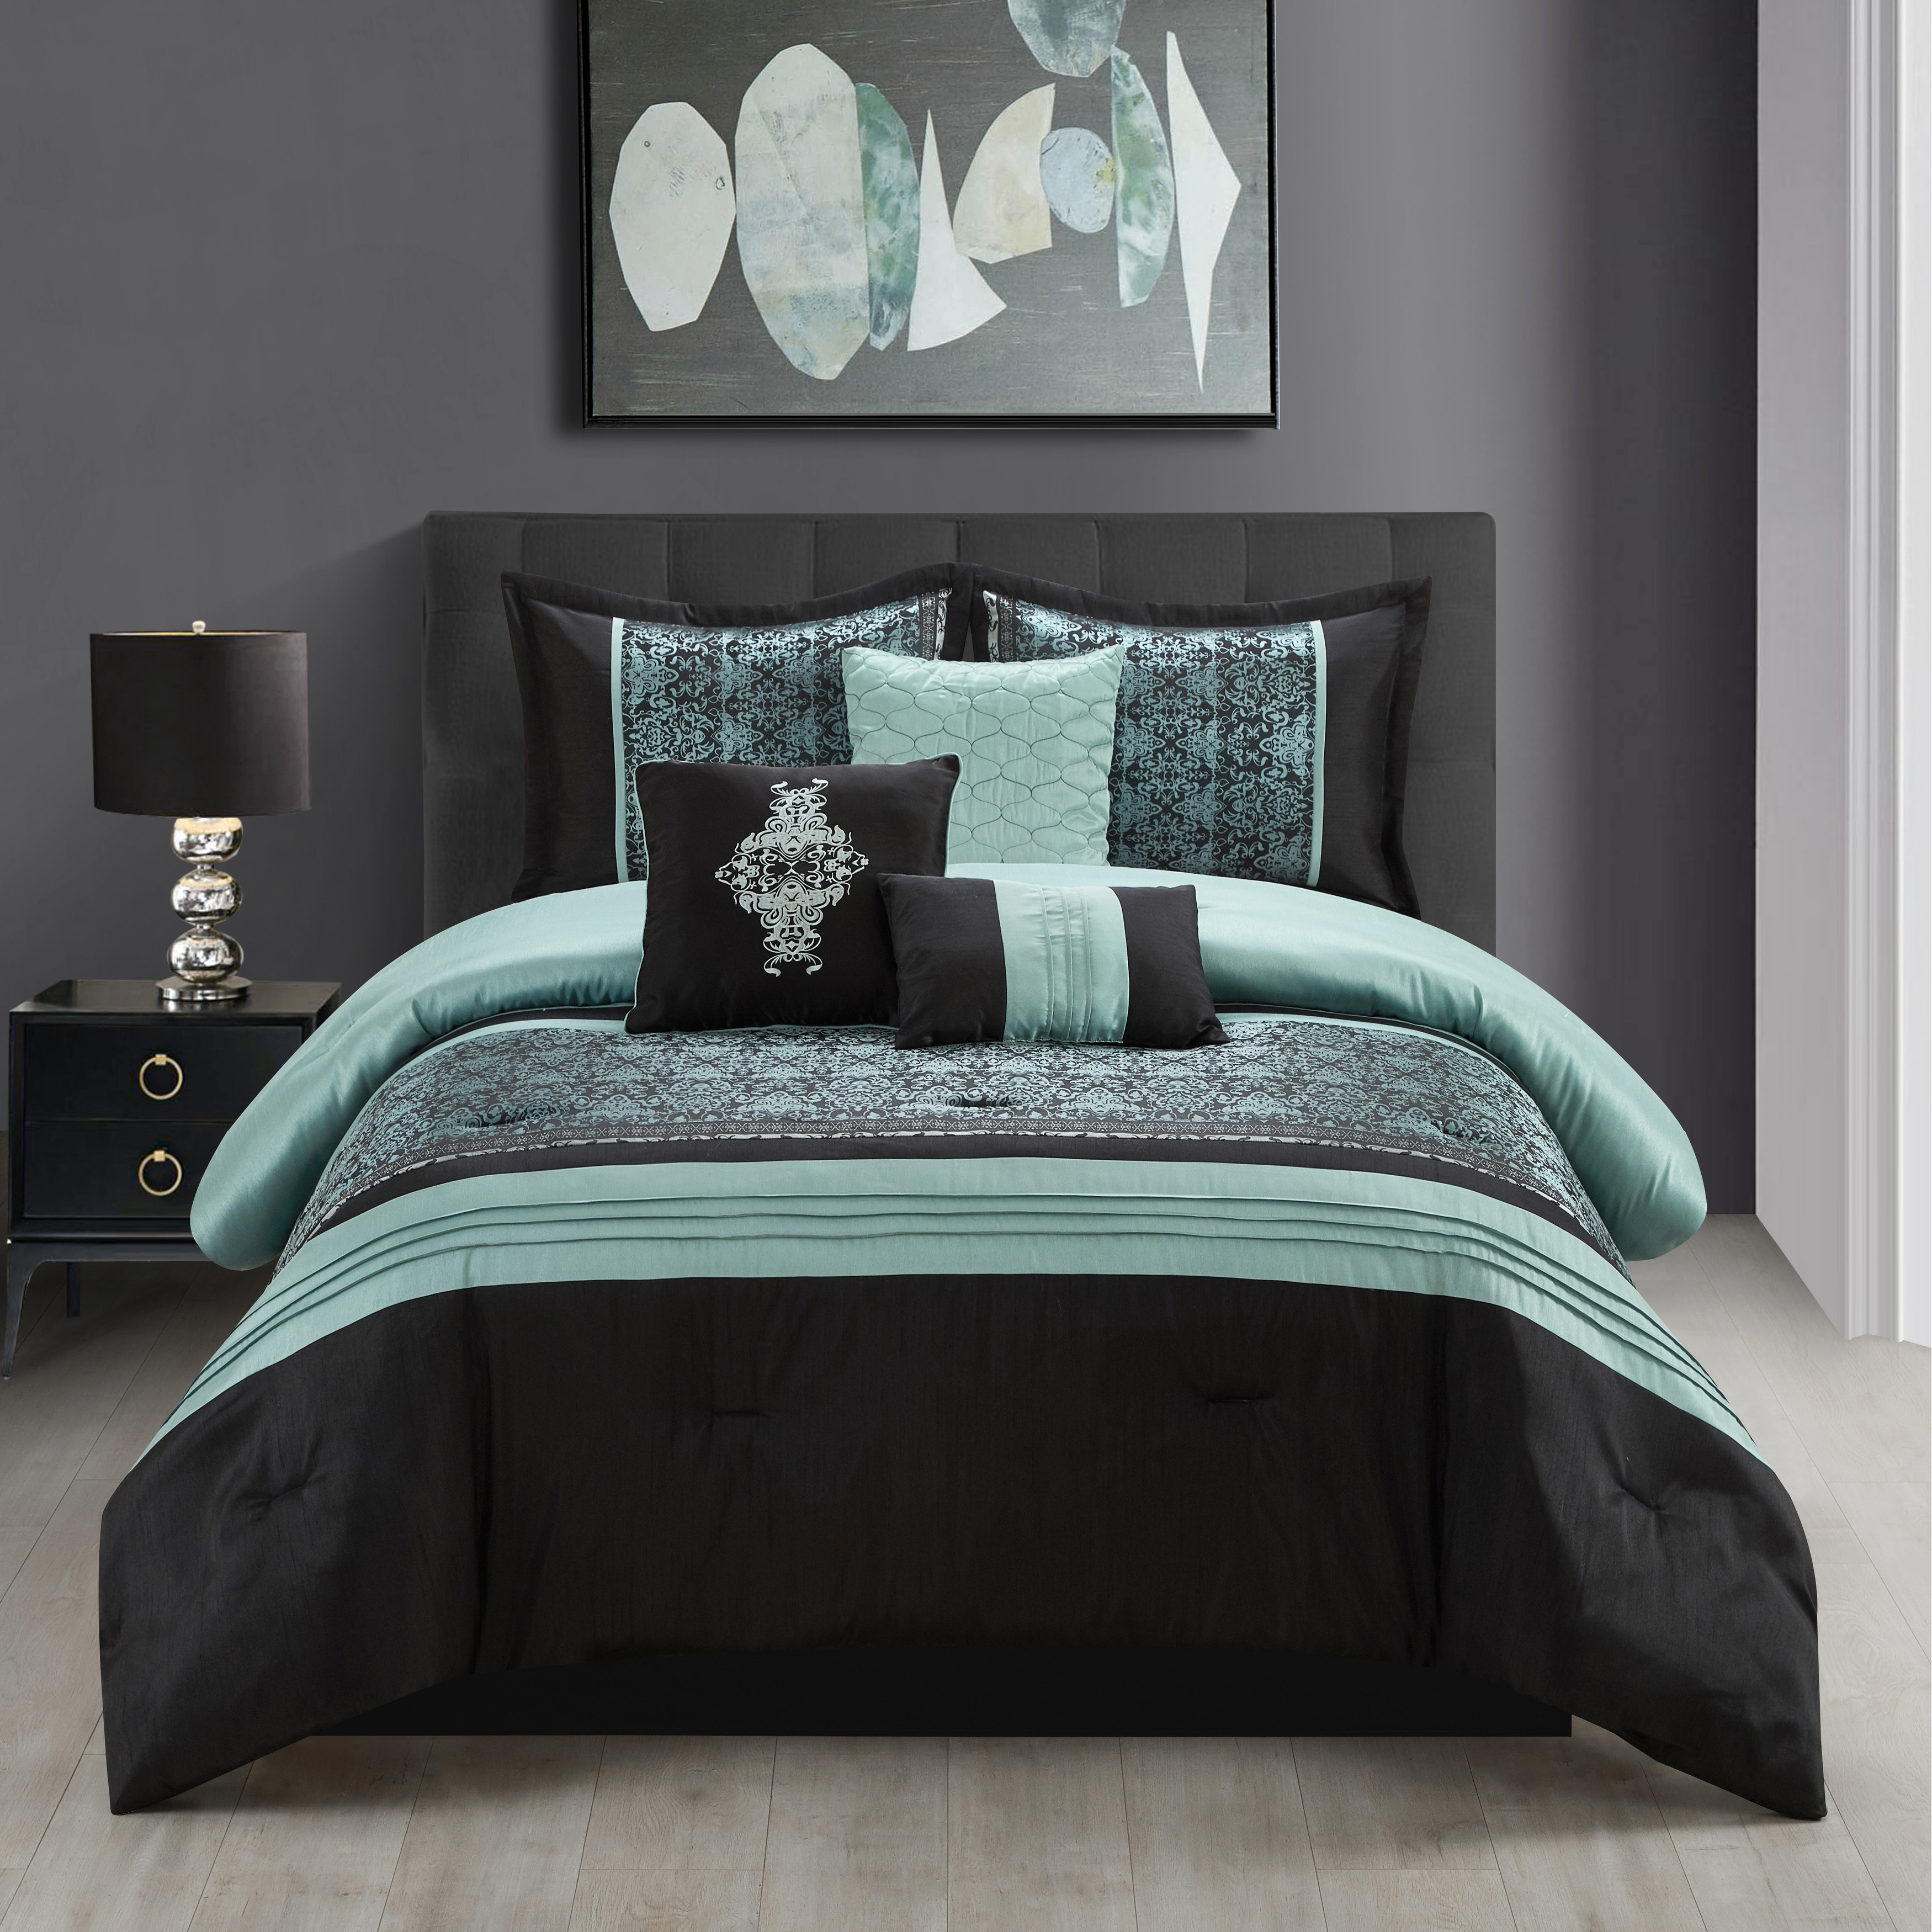 Teal Blue 7 Piece Down Alternative Bedding Comforter Sheet Set Breakfast pillows 